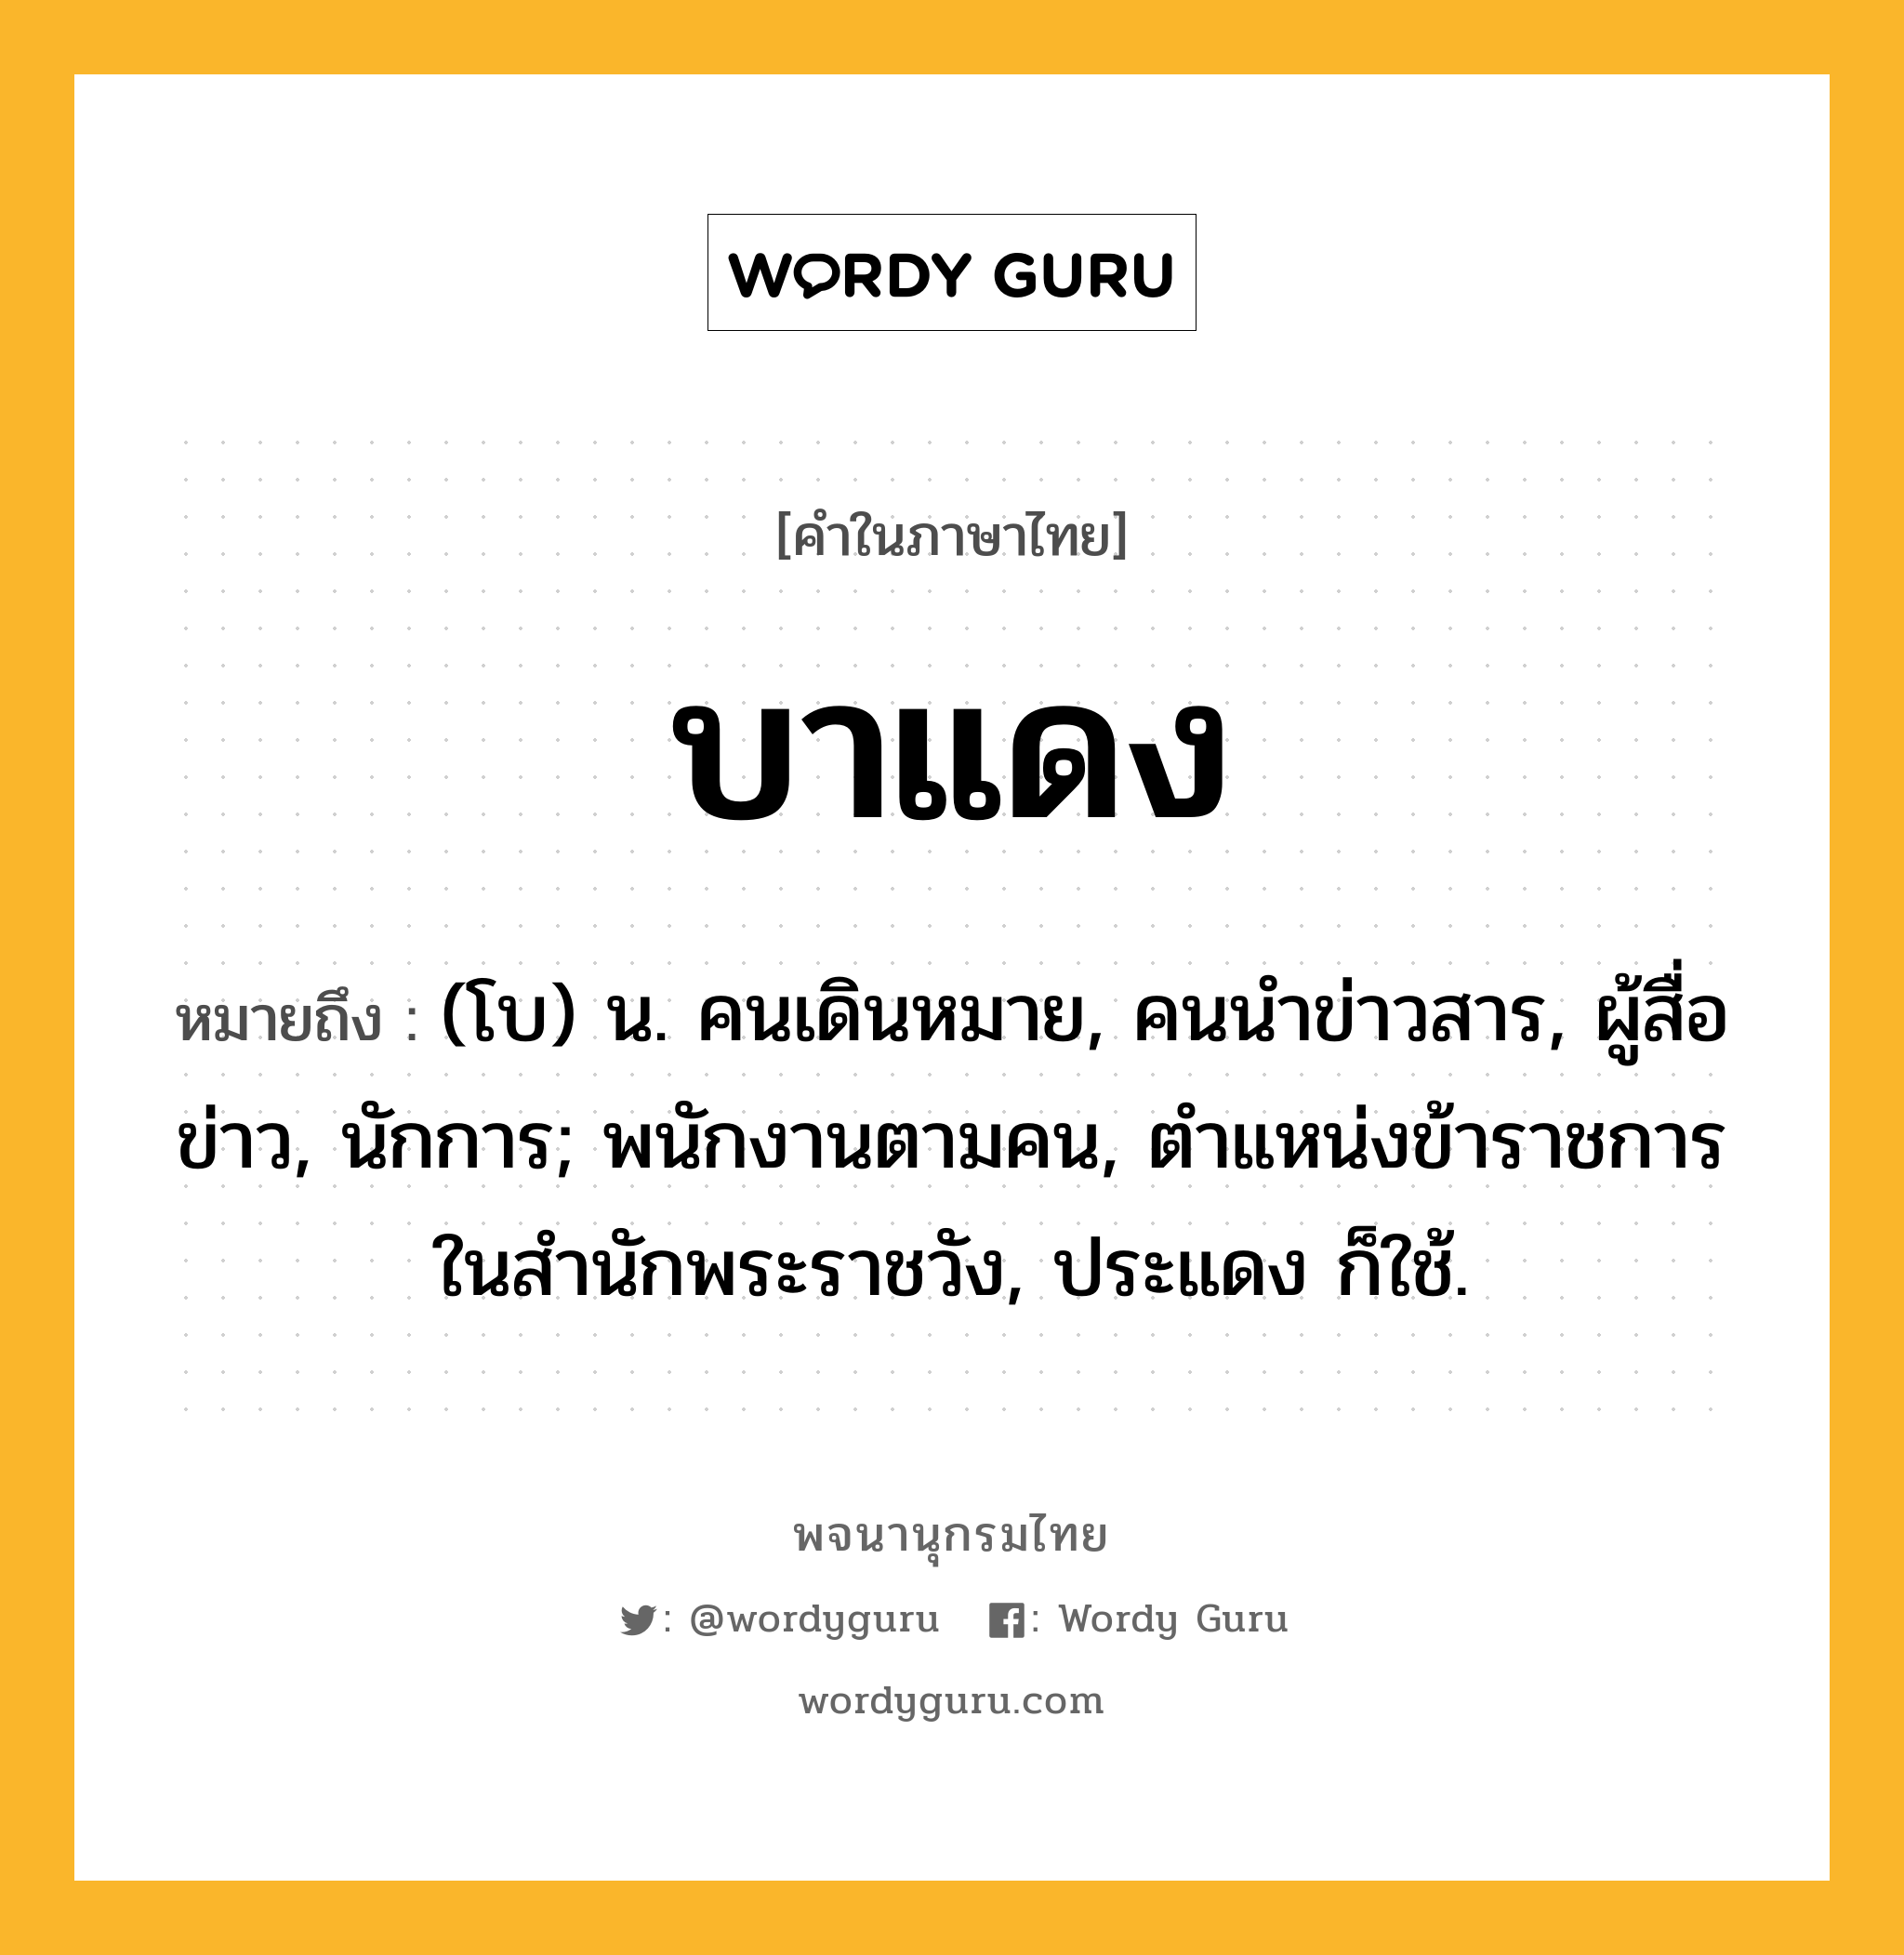 บาแดง ความหมาย หมายถึงอะไร?, คำในภาษาไทย บาแดง หมายถึง (โบ) น. คนเดินหมาย, คนนําข่าวสาร, ผู้สื่อข่าว, นักการ; พนักงานตามคน, ตําแหน่งข้าราชการในสํานักพระราชวัง, ประแดง ก็ใช้.